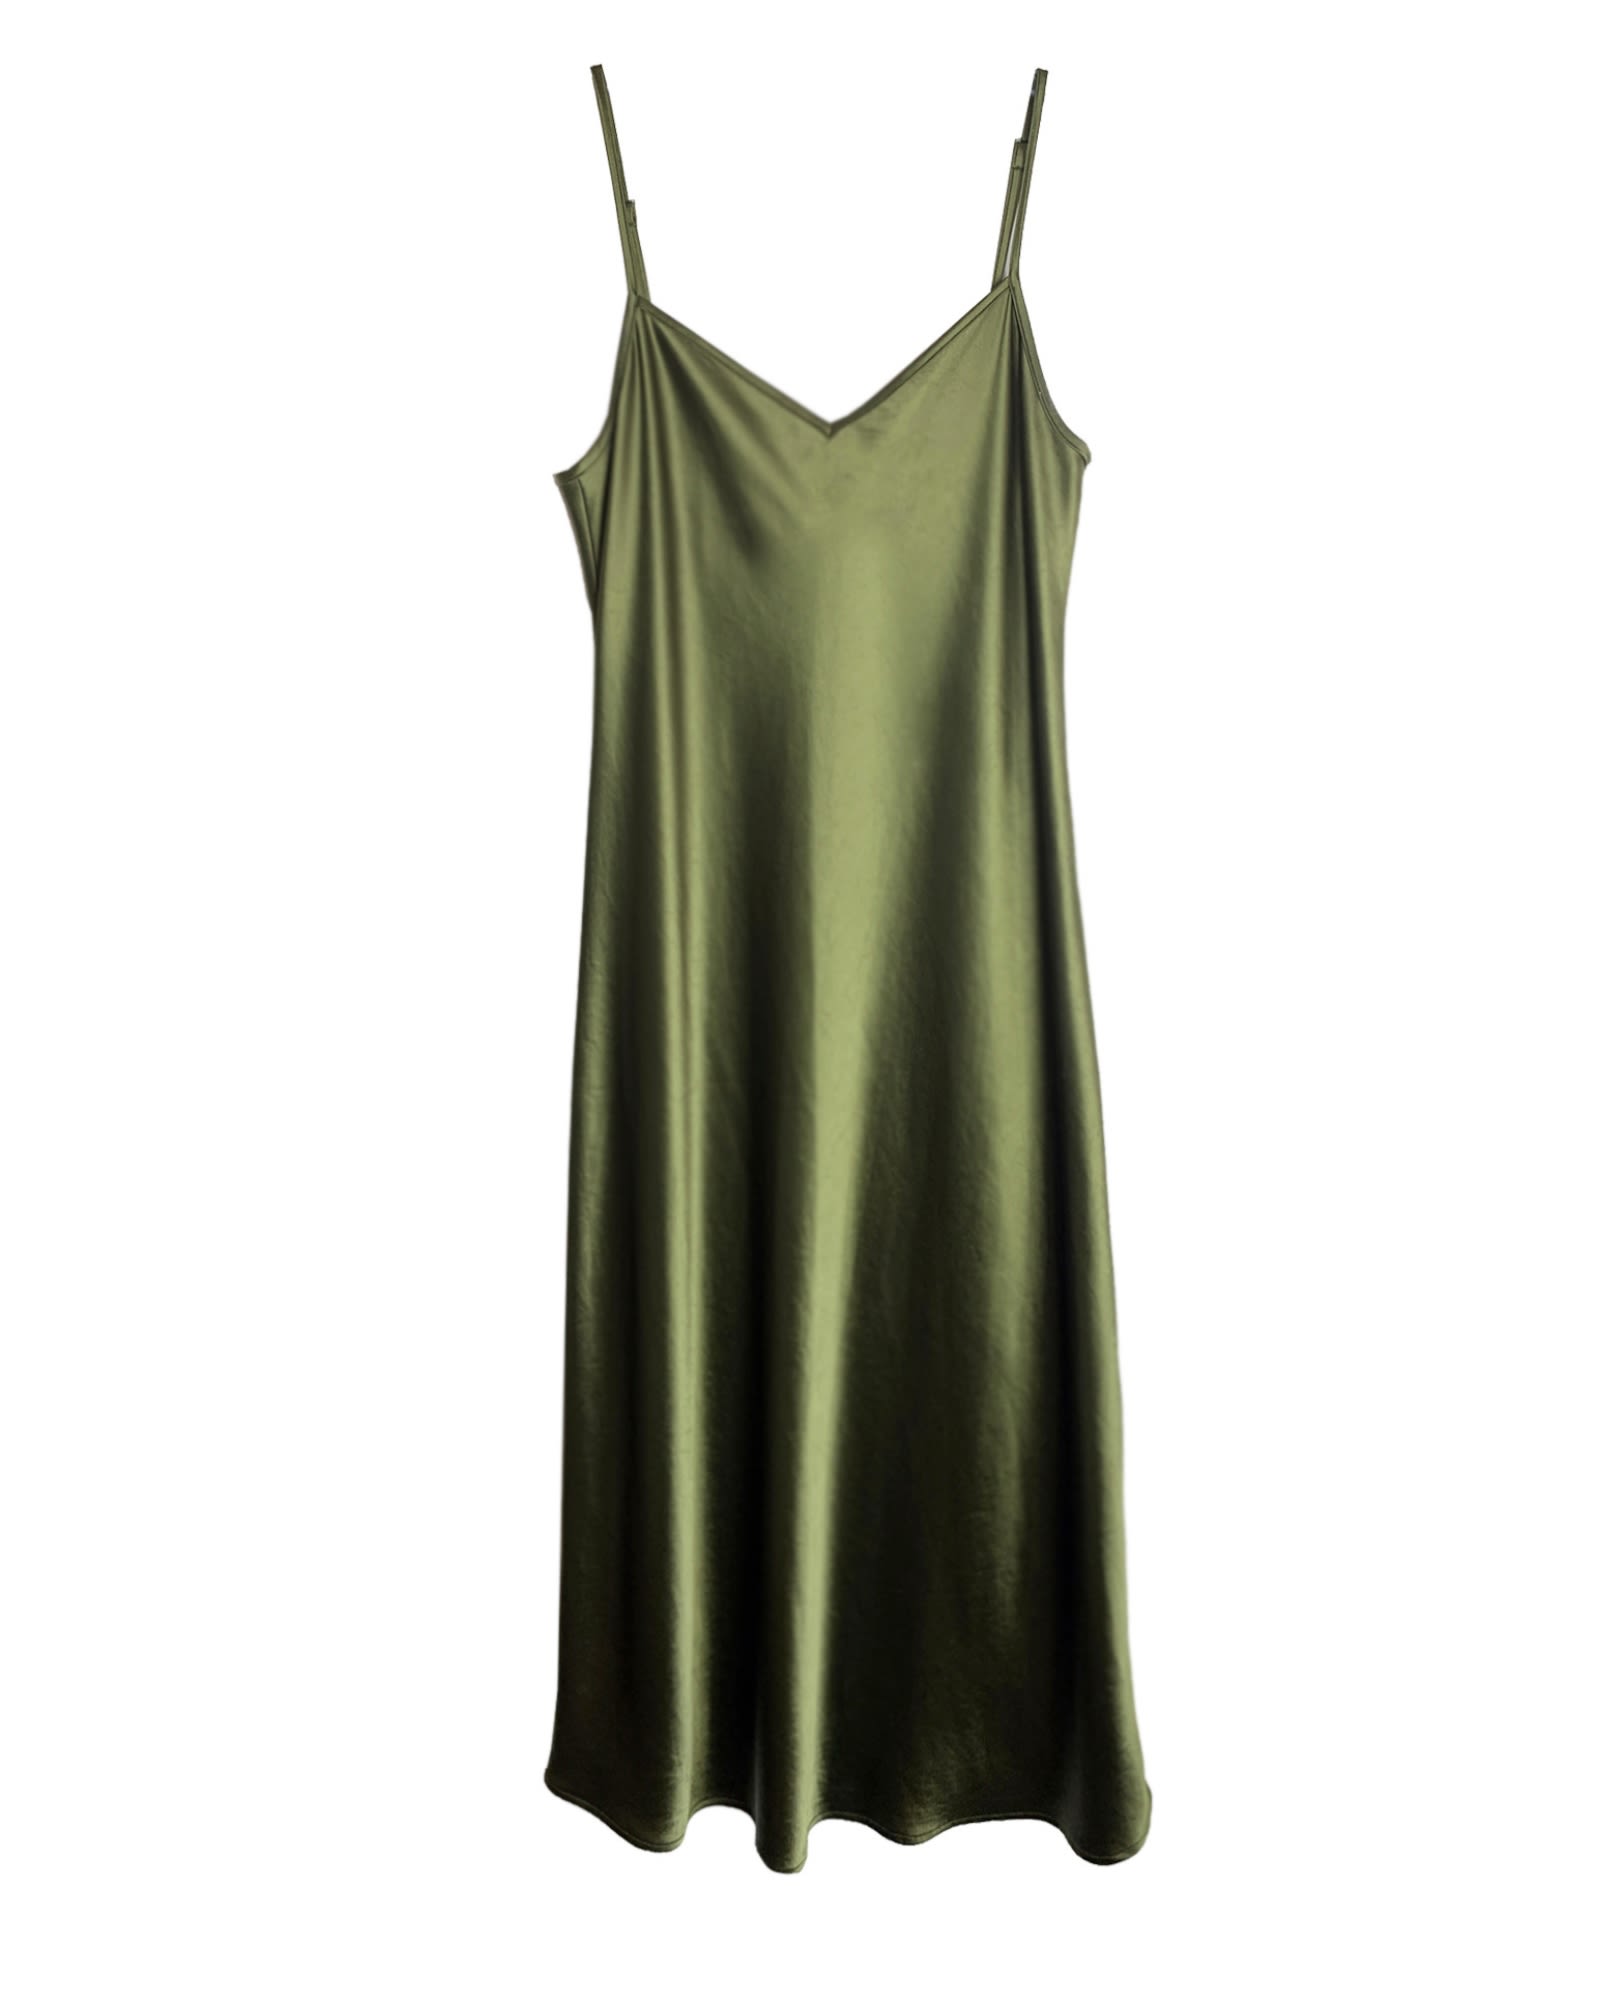 The Cabaret - Bias Slip Dress in Olive | Olive